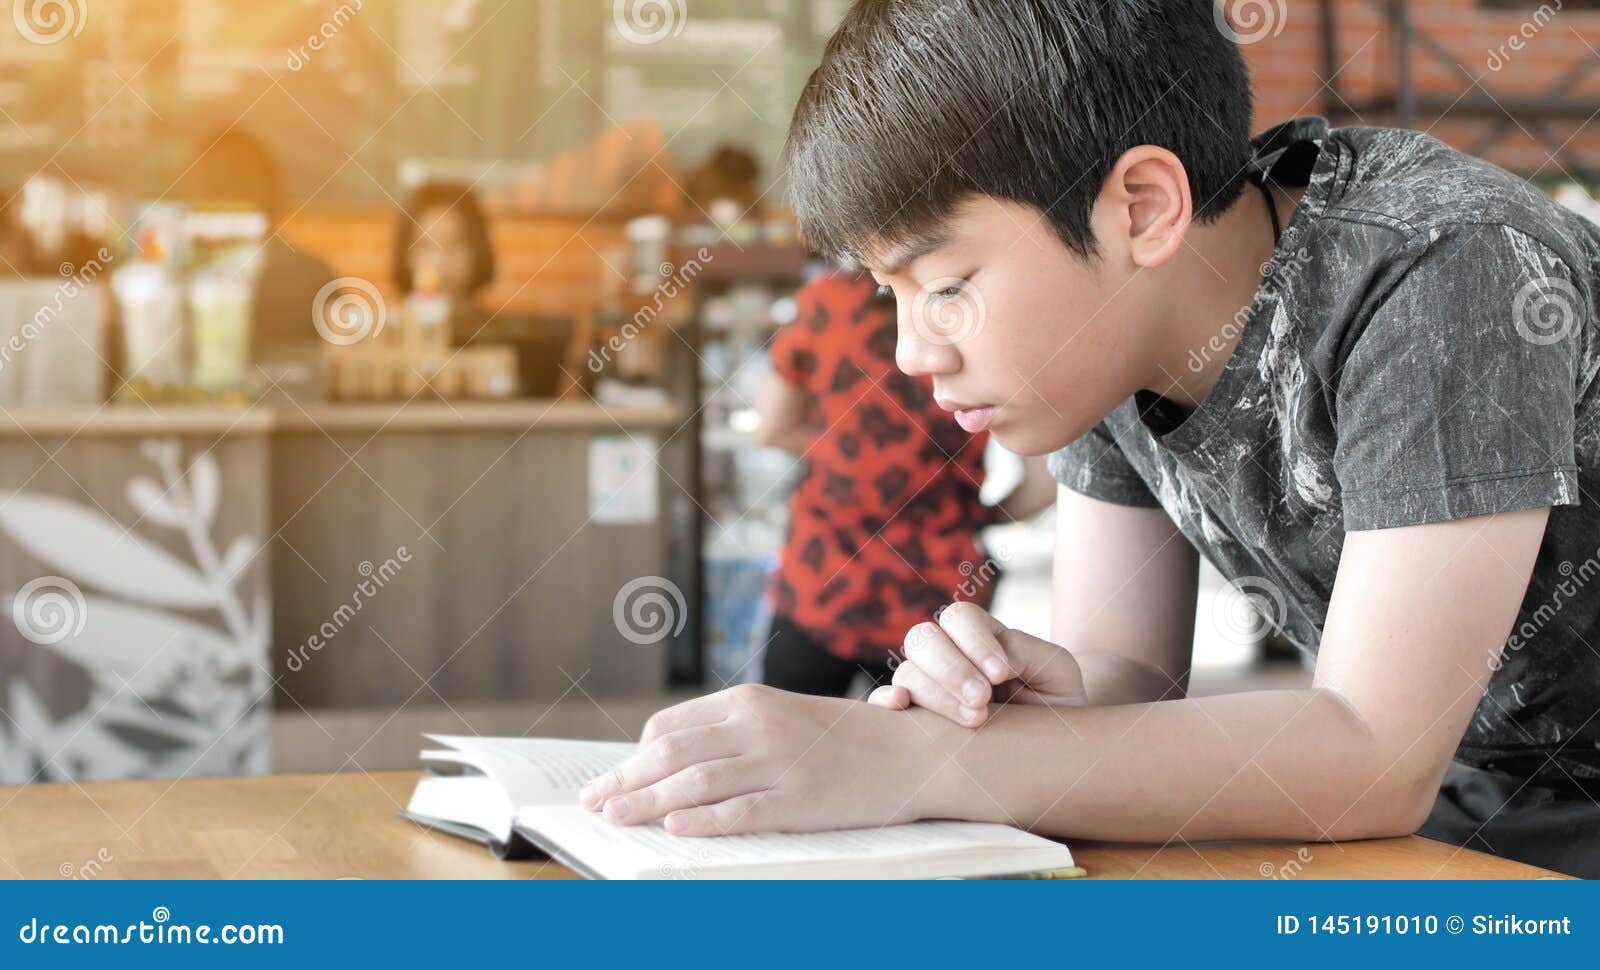 Читать мальчик 8 лет. Китайский мальчик читает книгу gif.